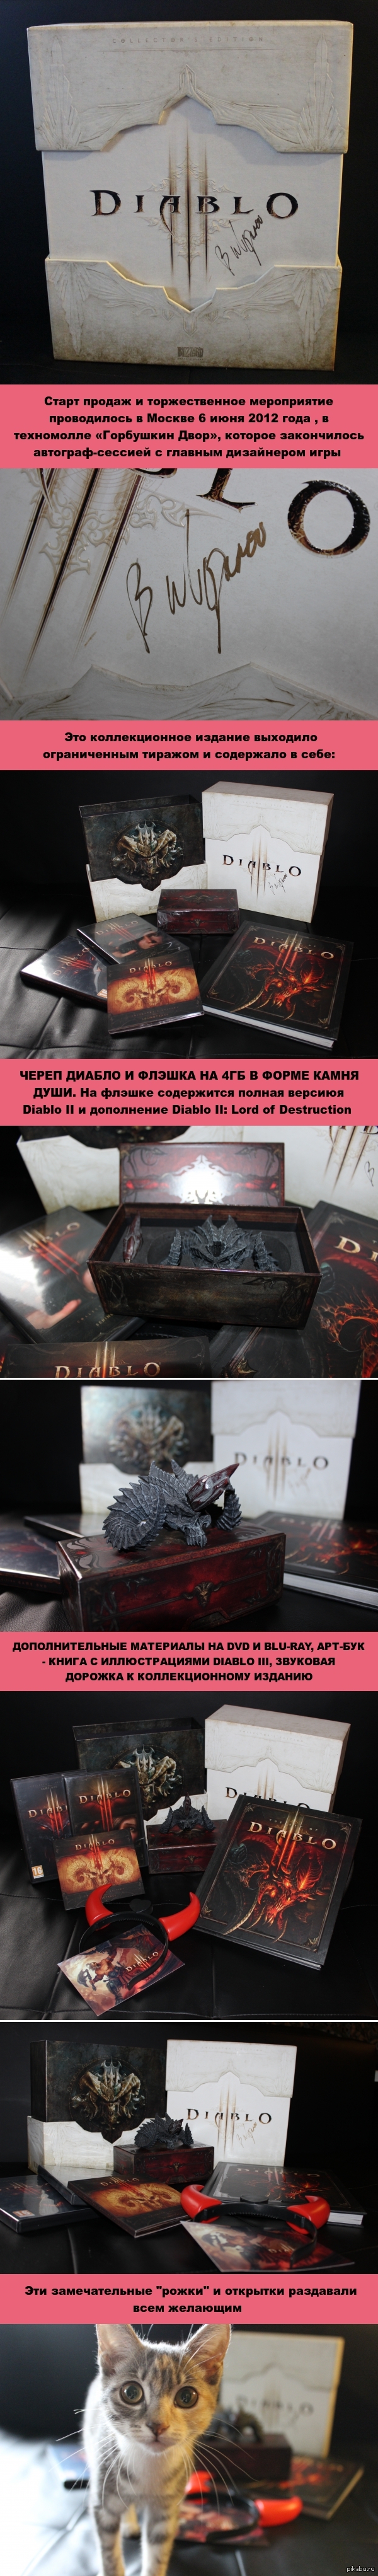 Diablo III.  )) Diablo III     Action RPG hack and slash,   Blizzard Entertainment.